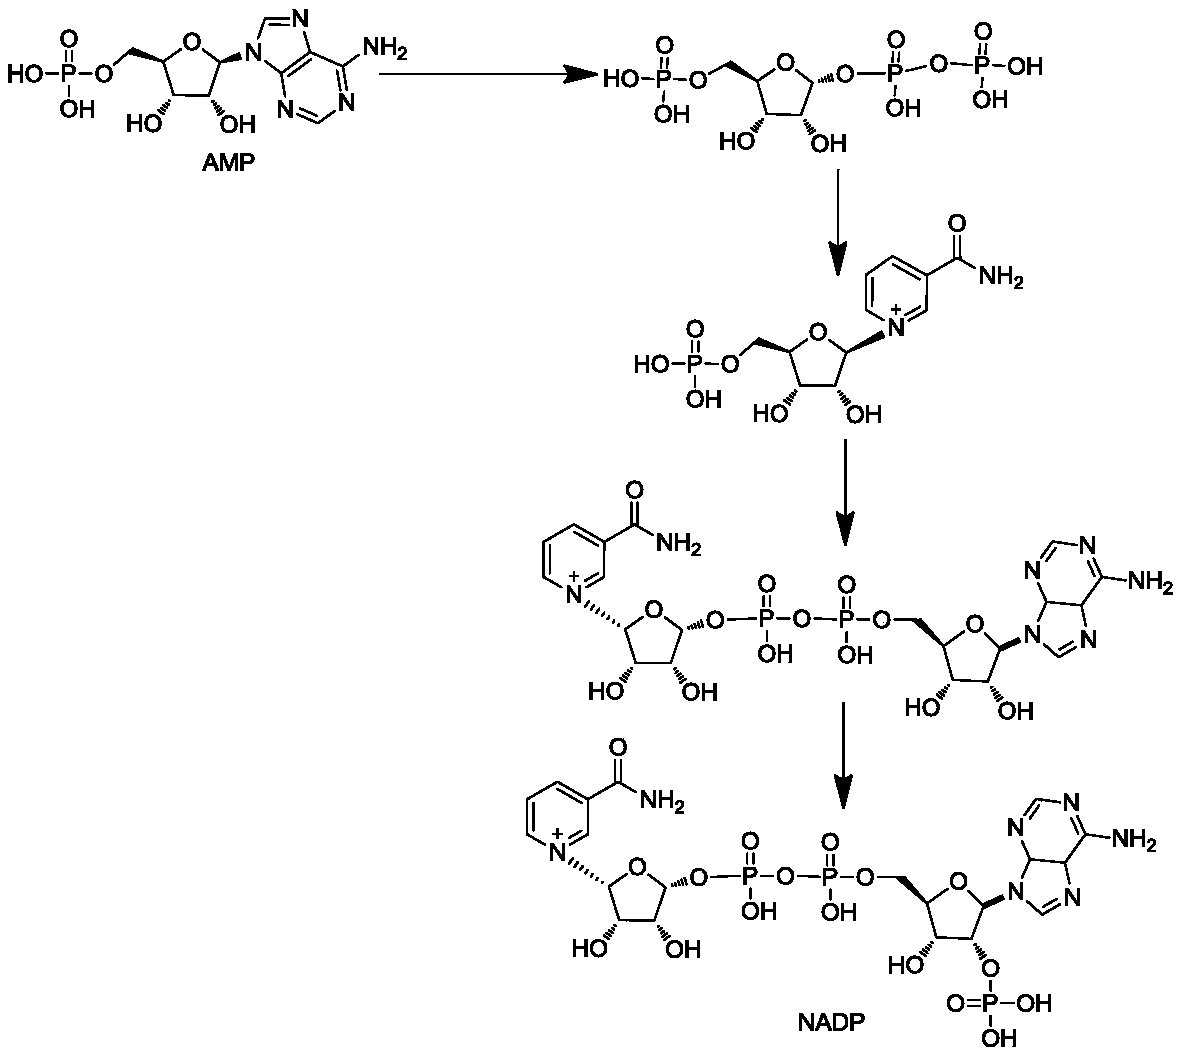 Method for preparing nicotinamide adenine dinucleotide phosphate by enzyme method